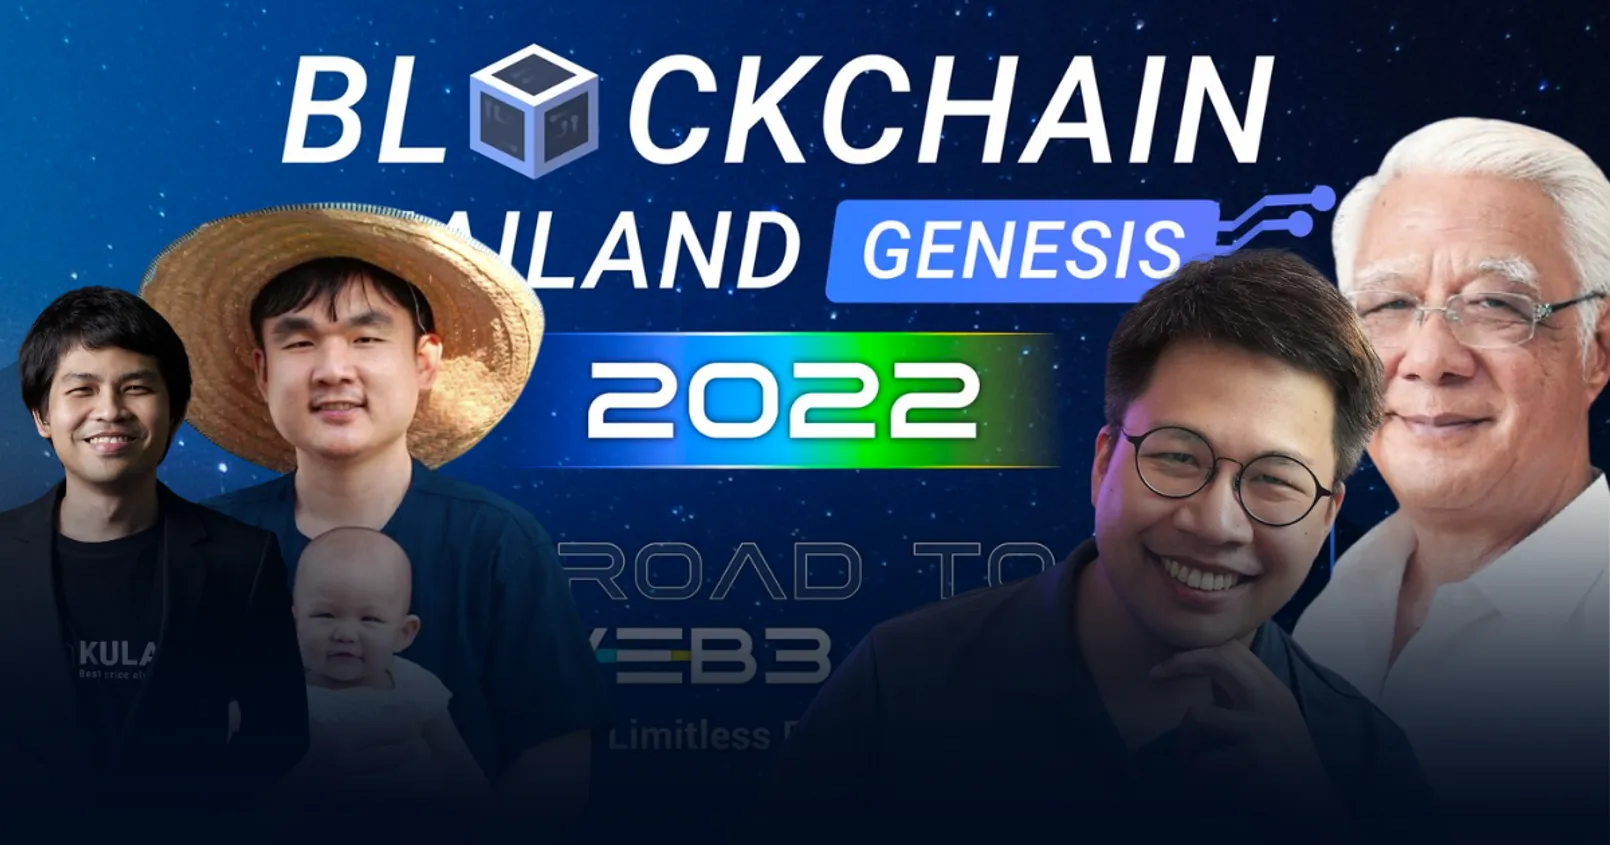 Blockchain Thailand Genesis 2022